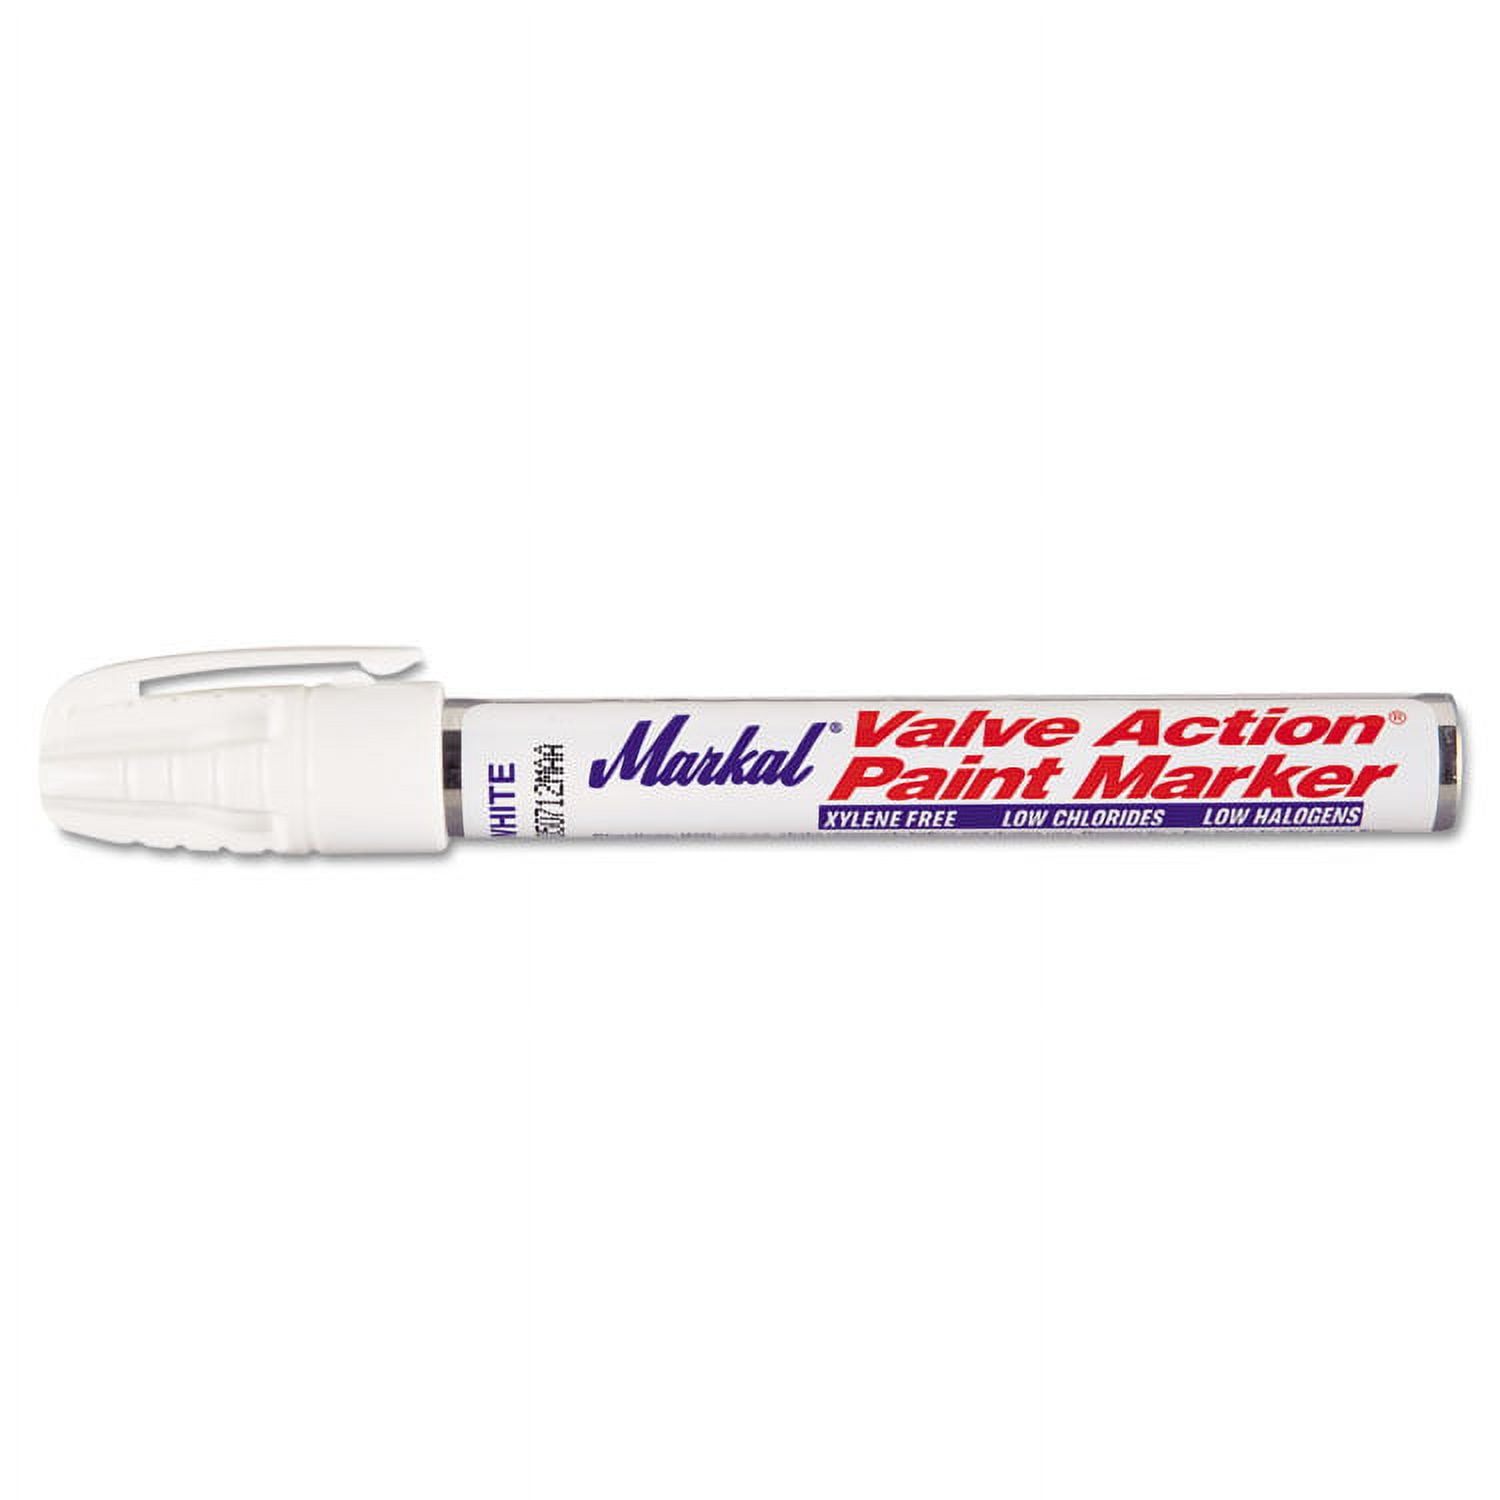 Markal 96800 Valve Action Paint Marker, White